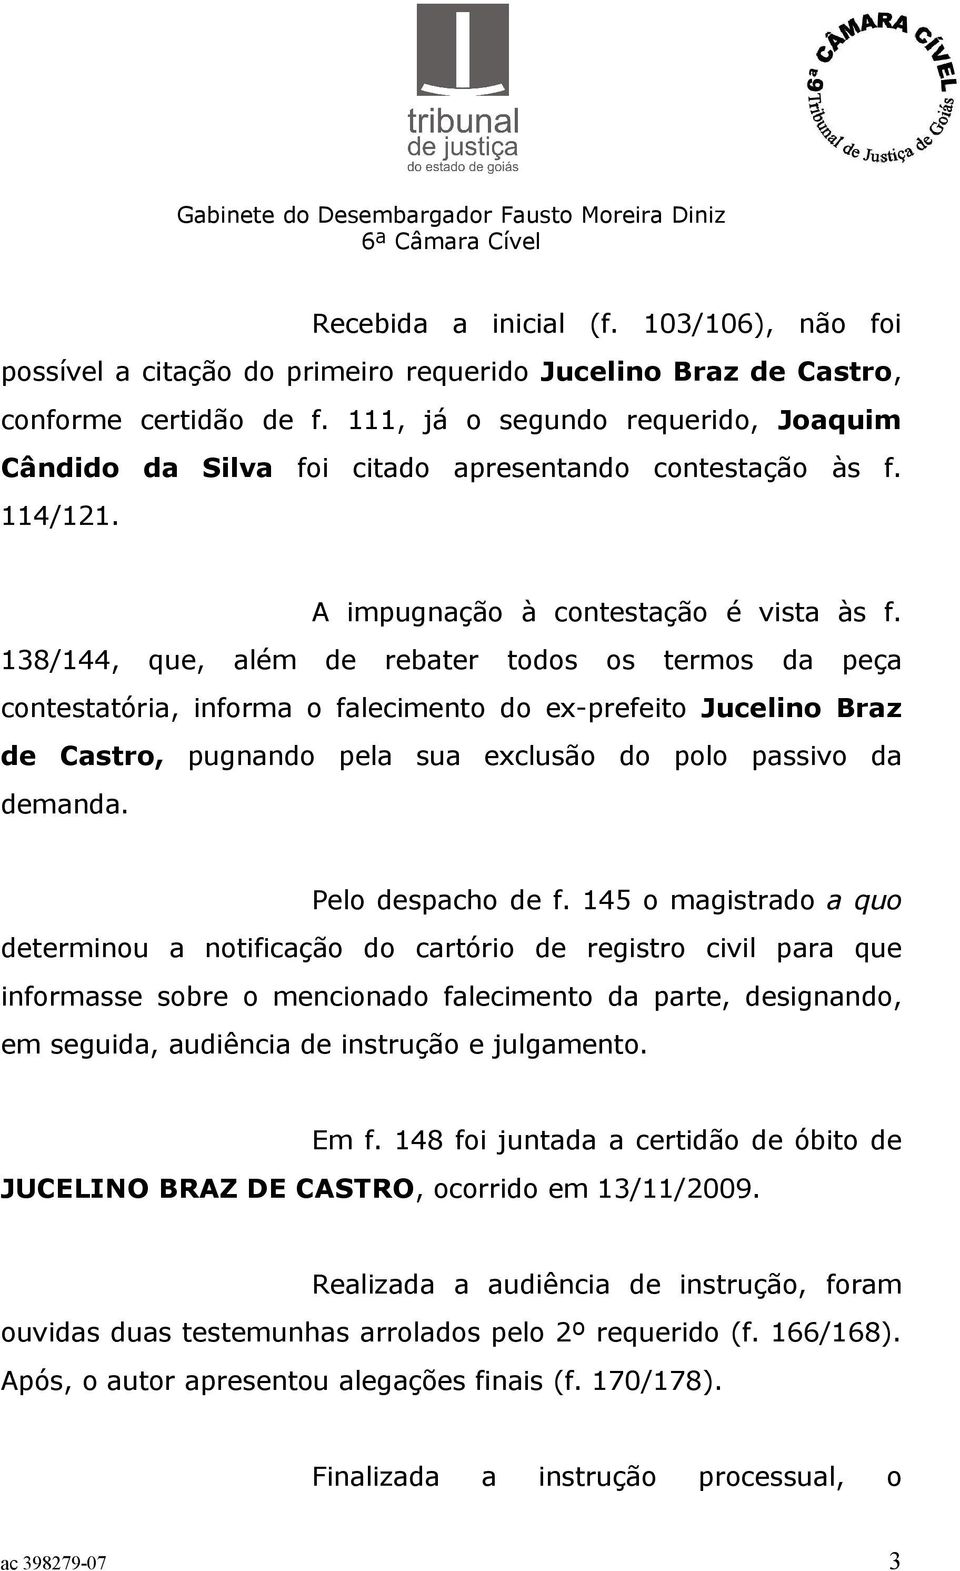 138/144, que, além de rebater todos os termos da peça contestatória, informa o falecimento do ex-prefeito Jucelino Braz de Castro, pugnando pela sua exclusão do polo passivo da demanda.